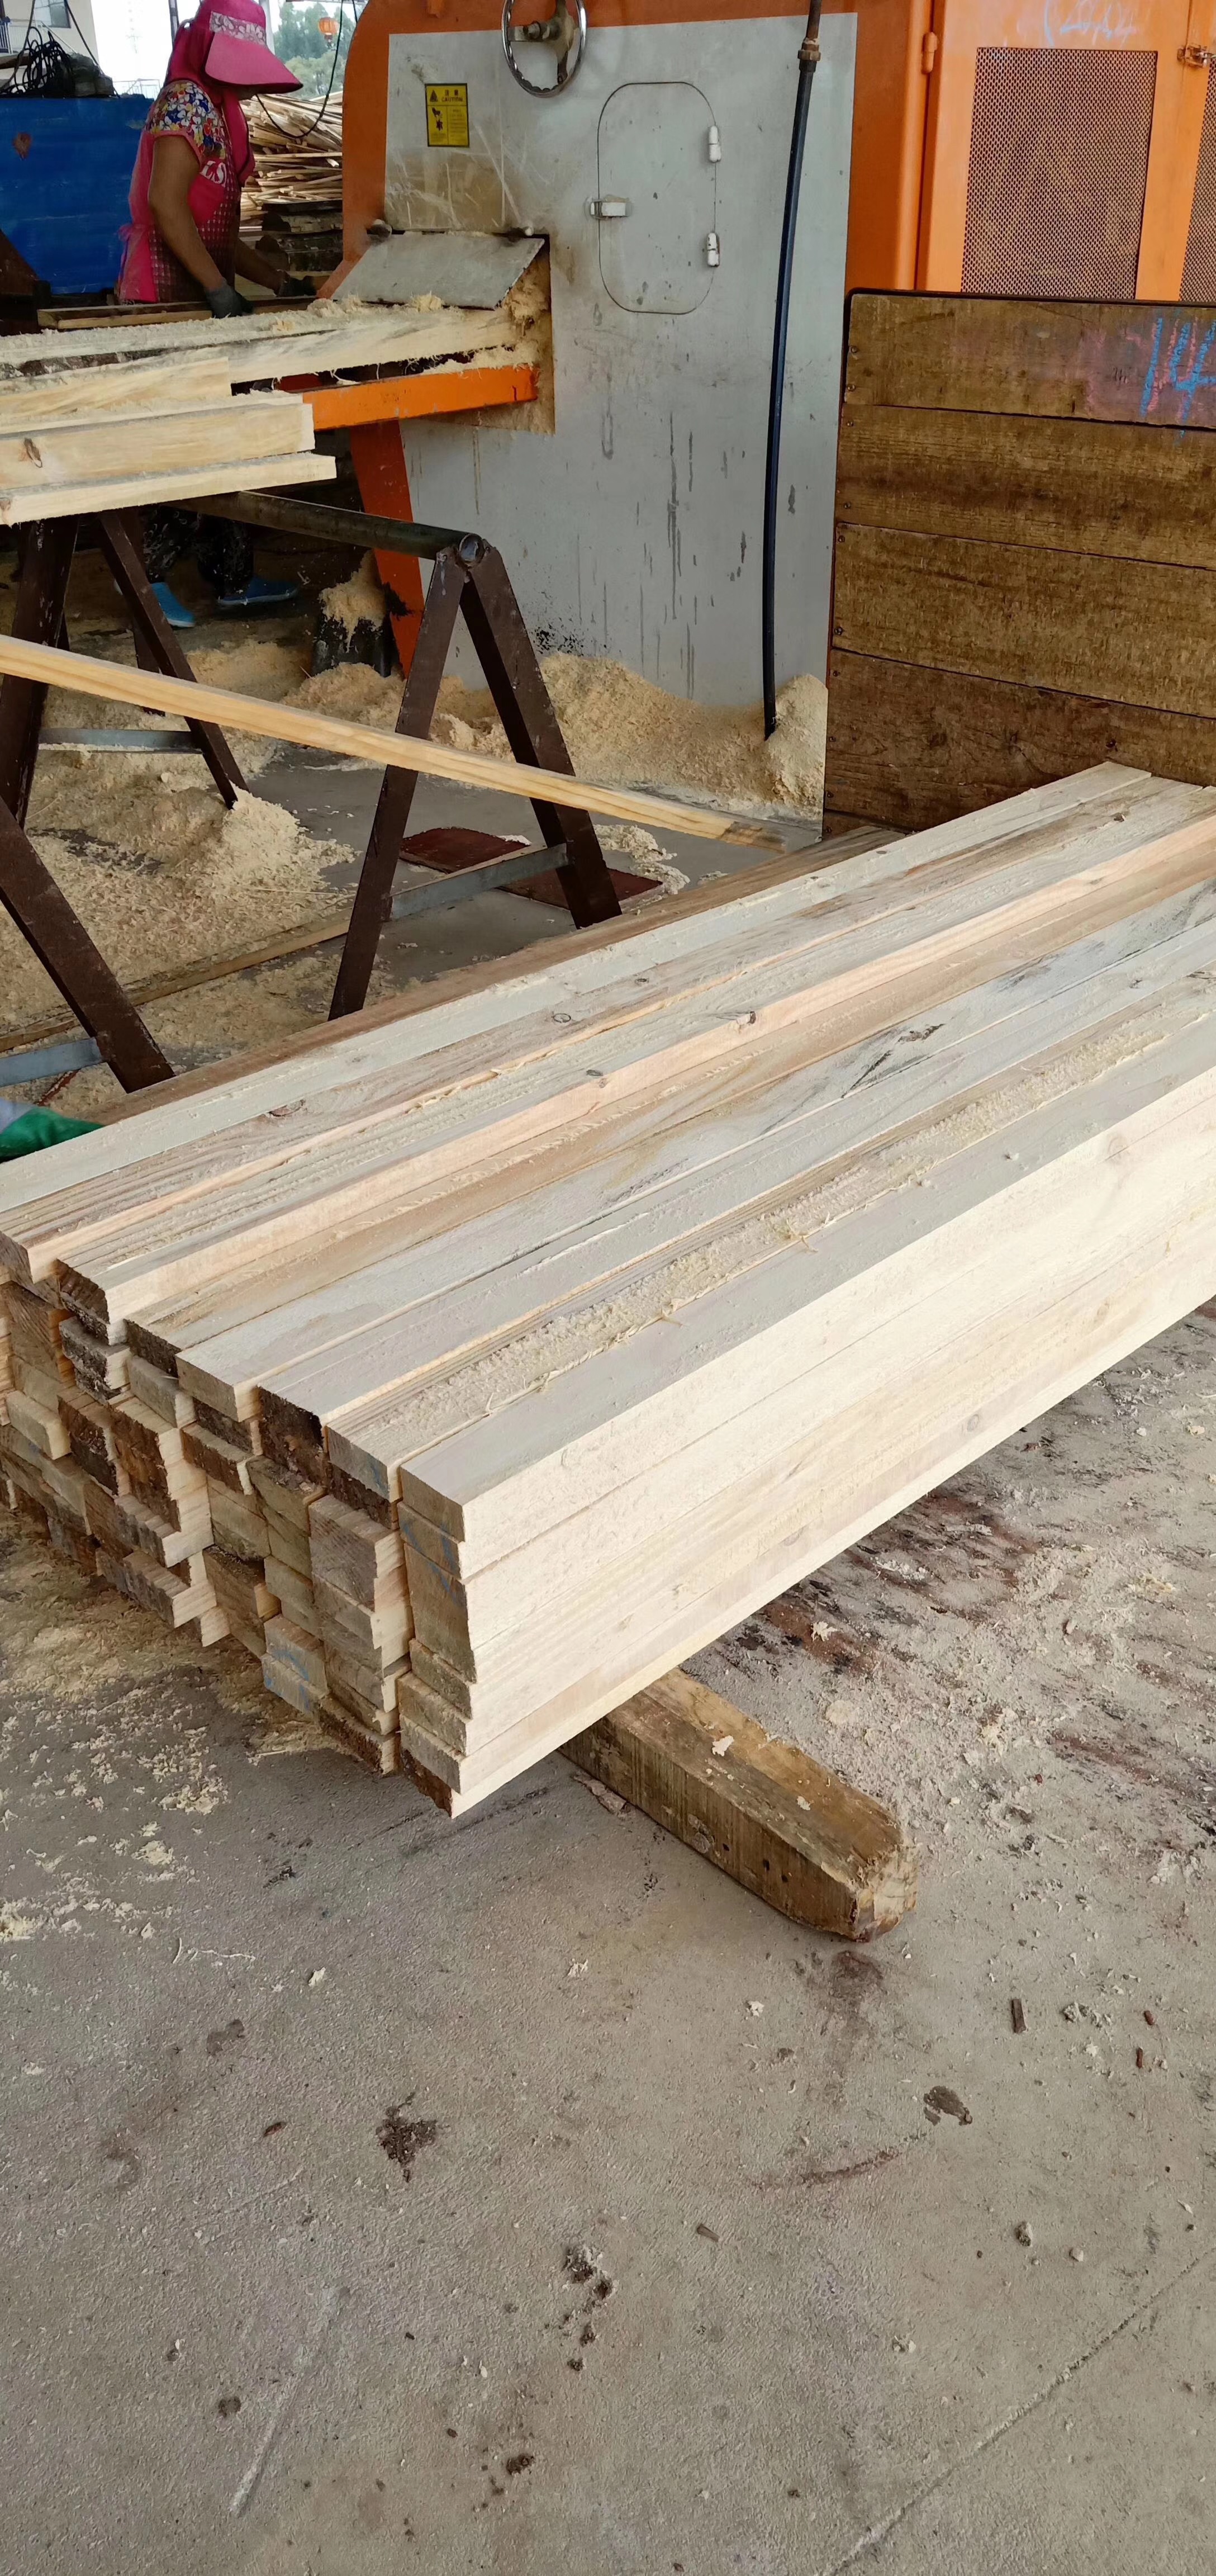 广西进口木材加工厂广西进口木材加工厂 广西进口木材价格 广西进口木材厂家